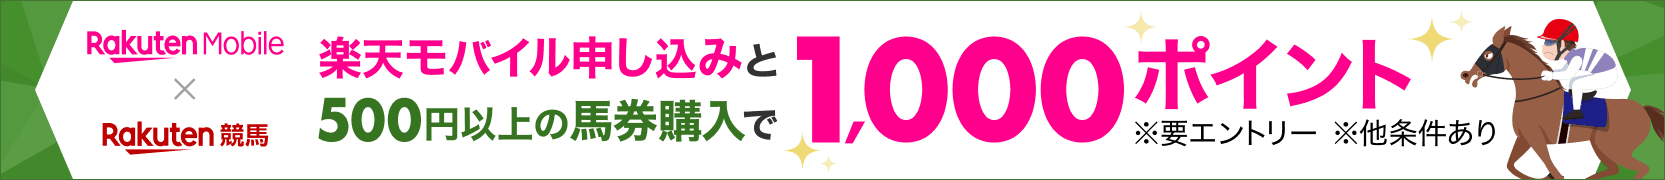 （制作不要・バナー掲載）「Rakuten UN-LIMIT VII」のオンラインお申し込み&楽天競馬で合計500円以上の馬券購入で1,000ポイントプレゼントキャンペーン